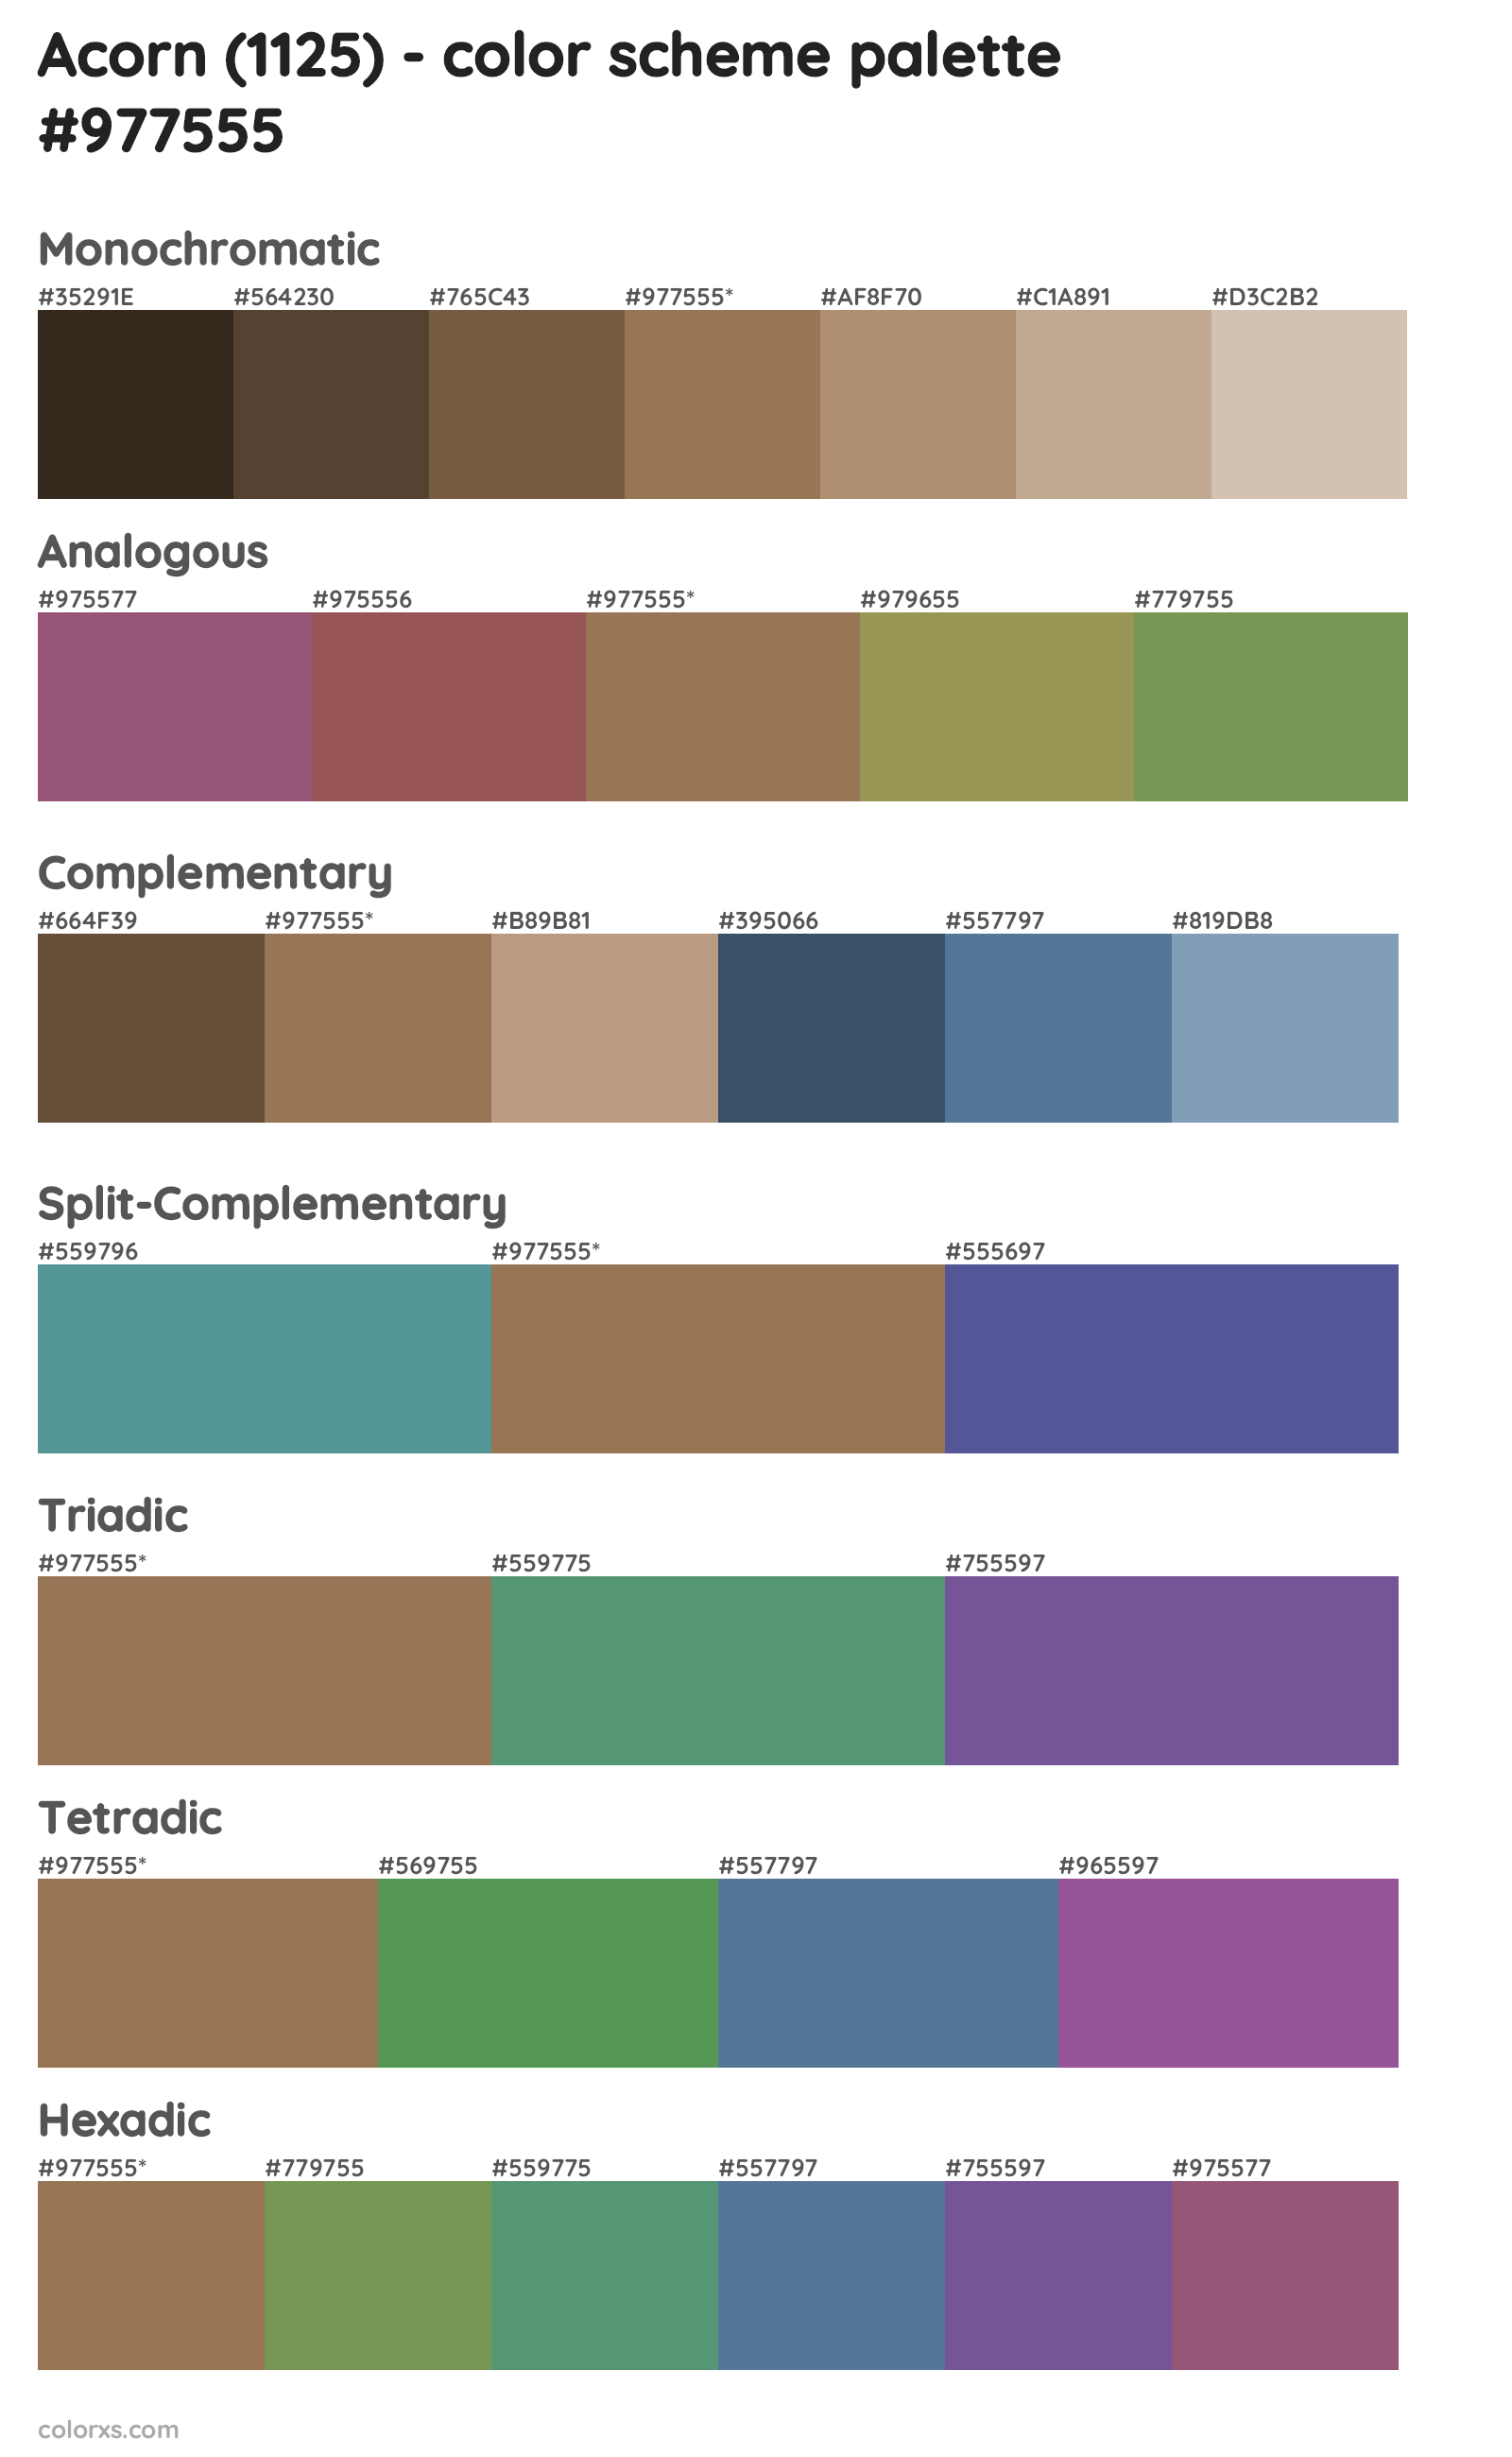 Acorn (1125) Color Scheme Palettes